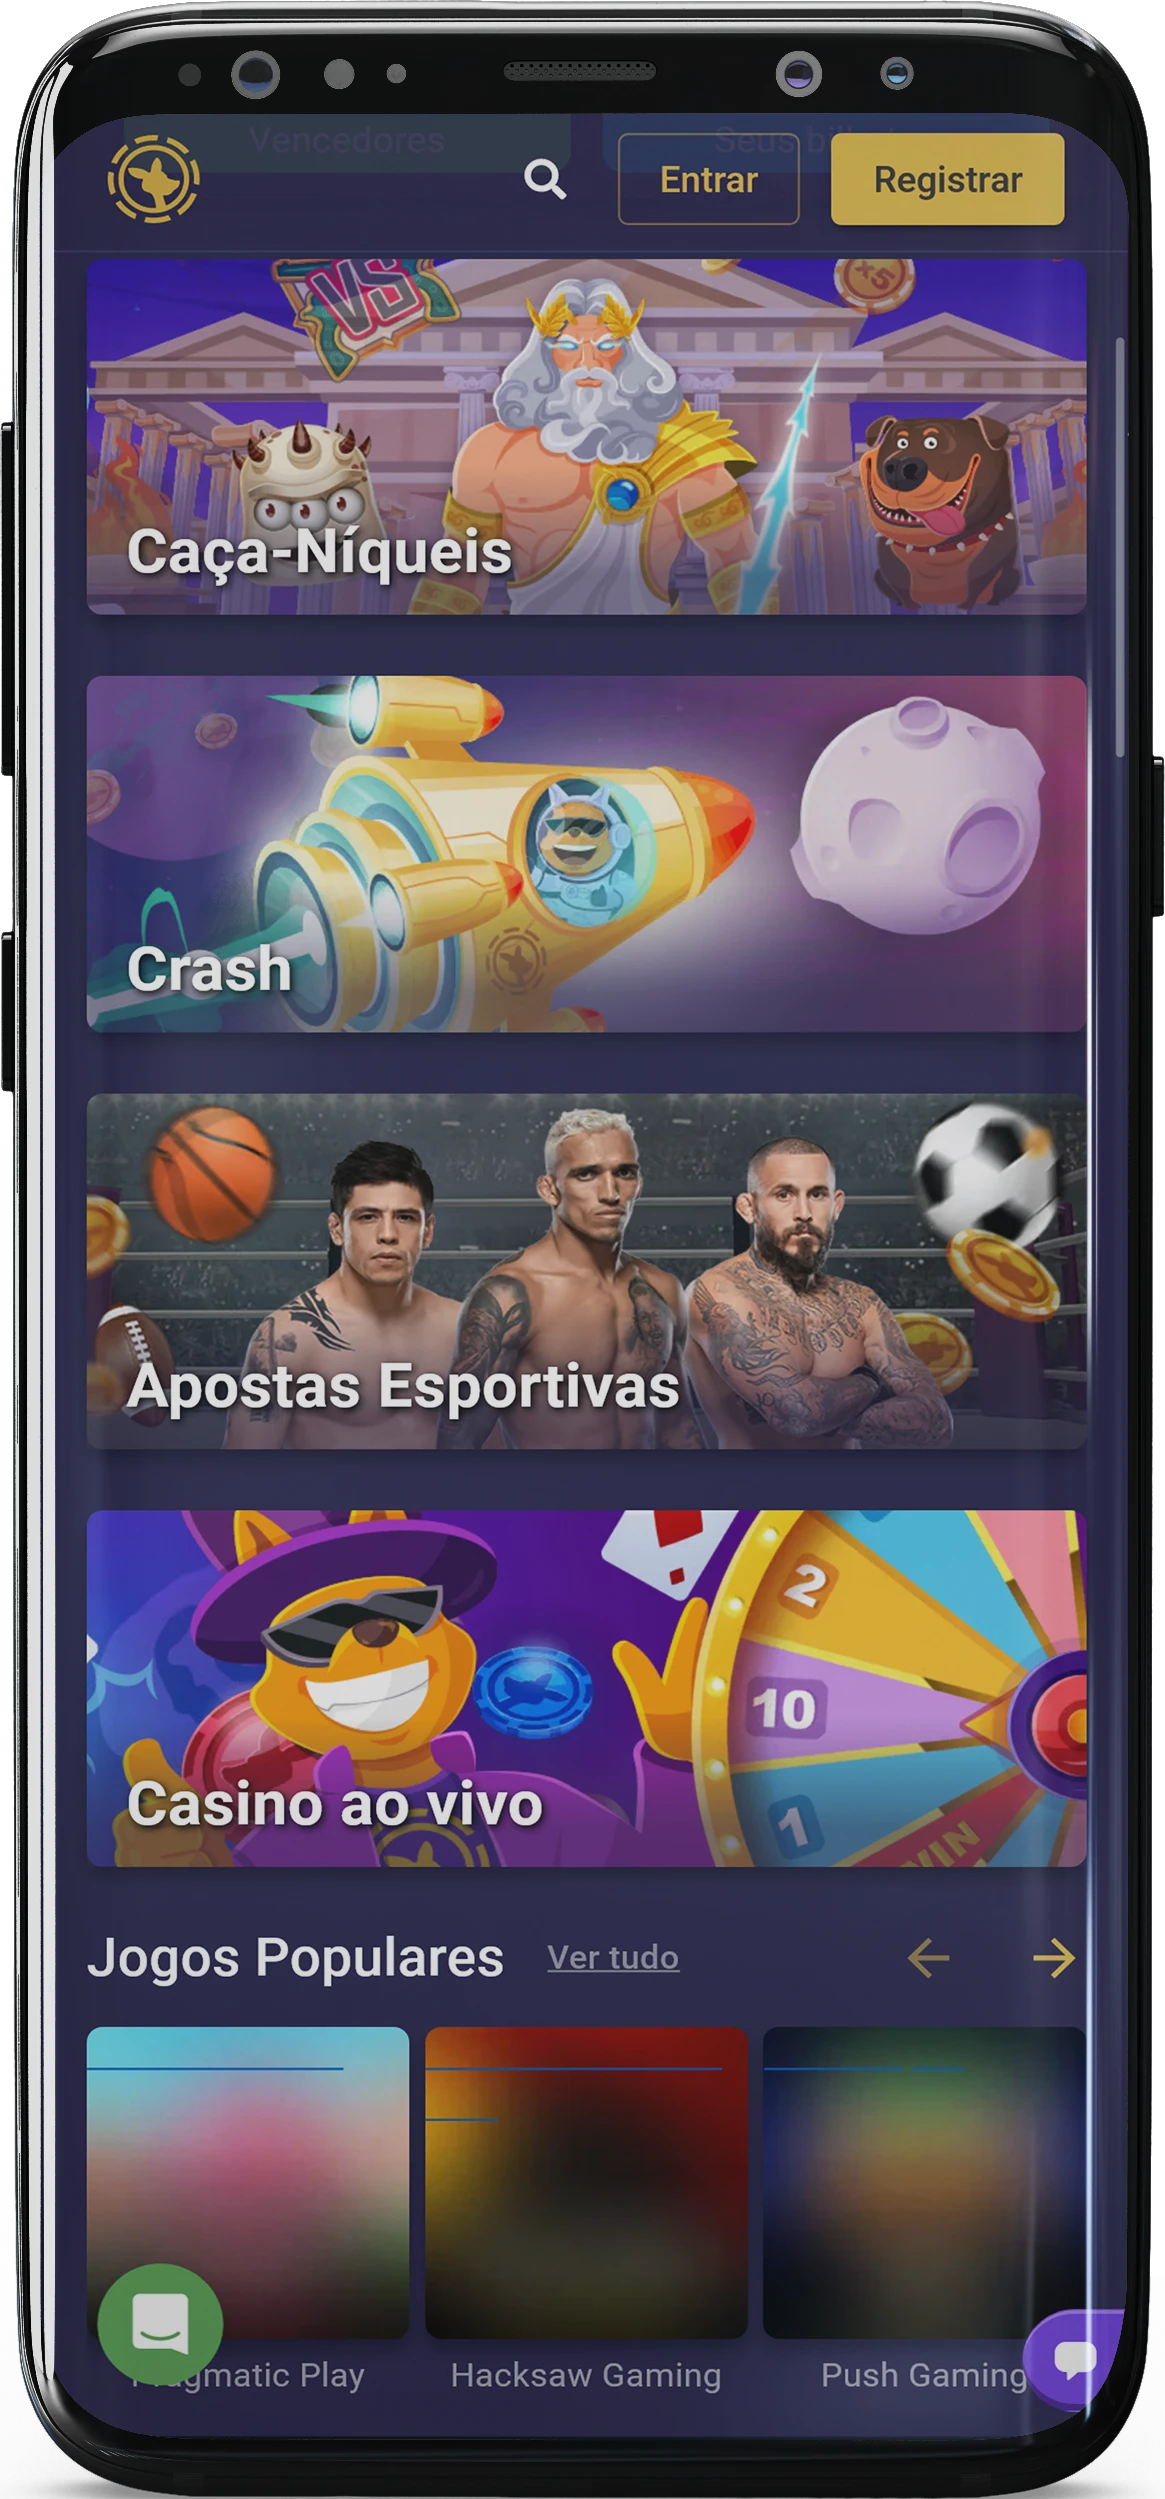 Captura de tela de todas as categorias de jogos no aplicativo Roobet